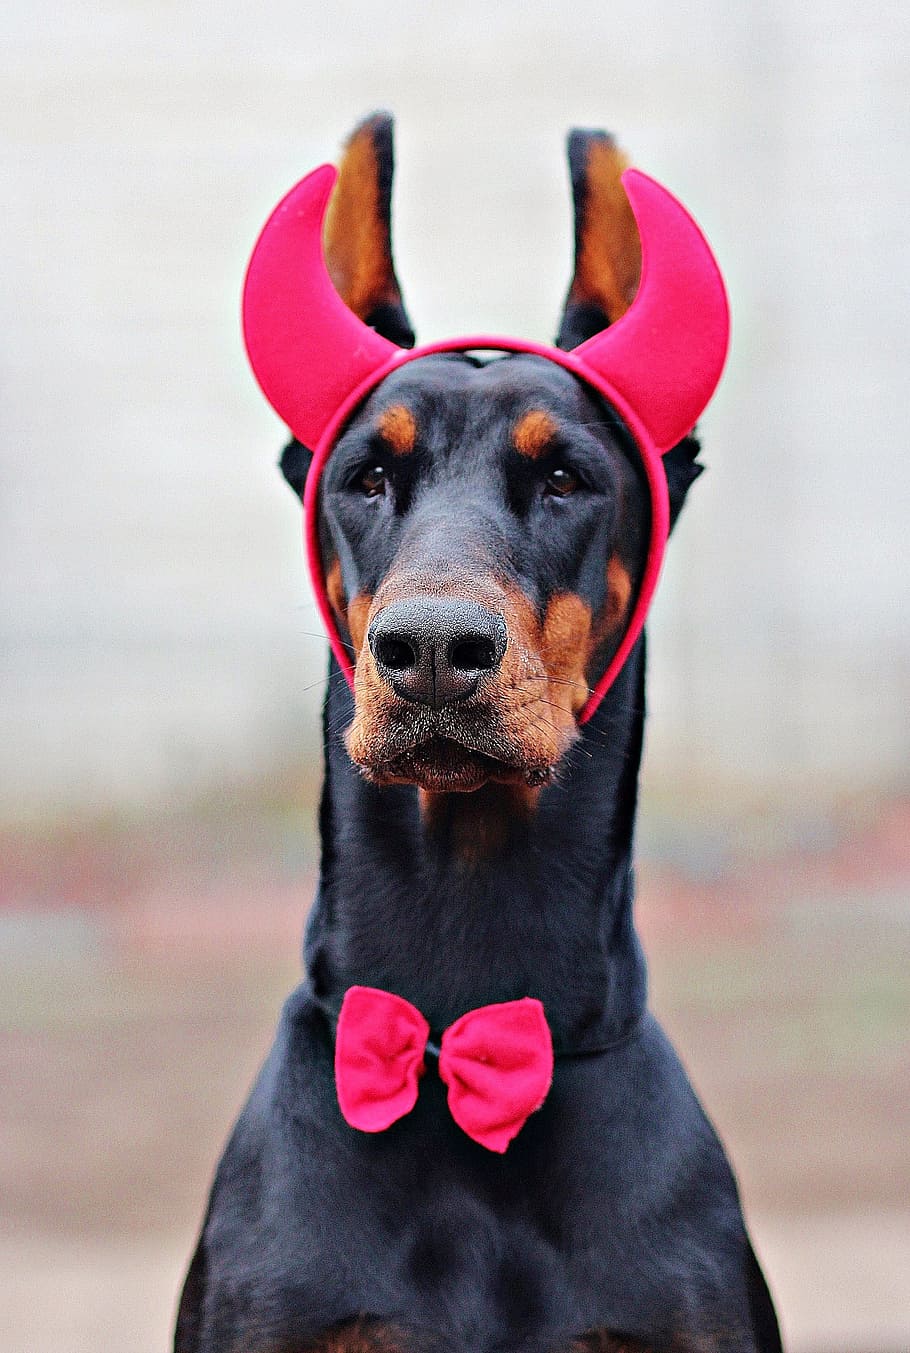 Doberman, Devil, Dog, Carnival, dog carnival, dress, horns